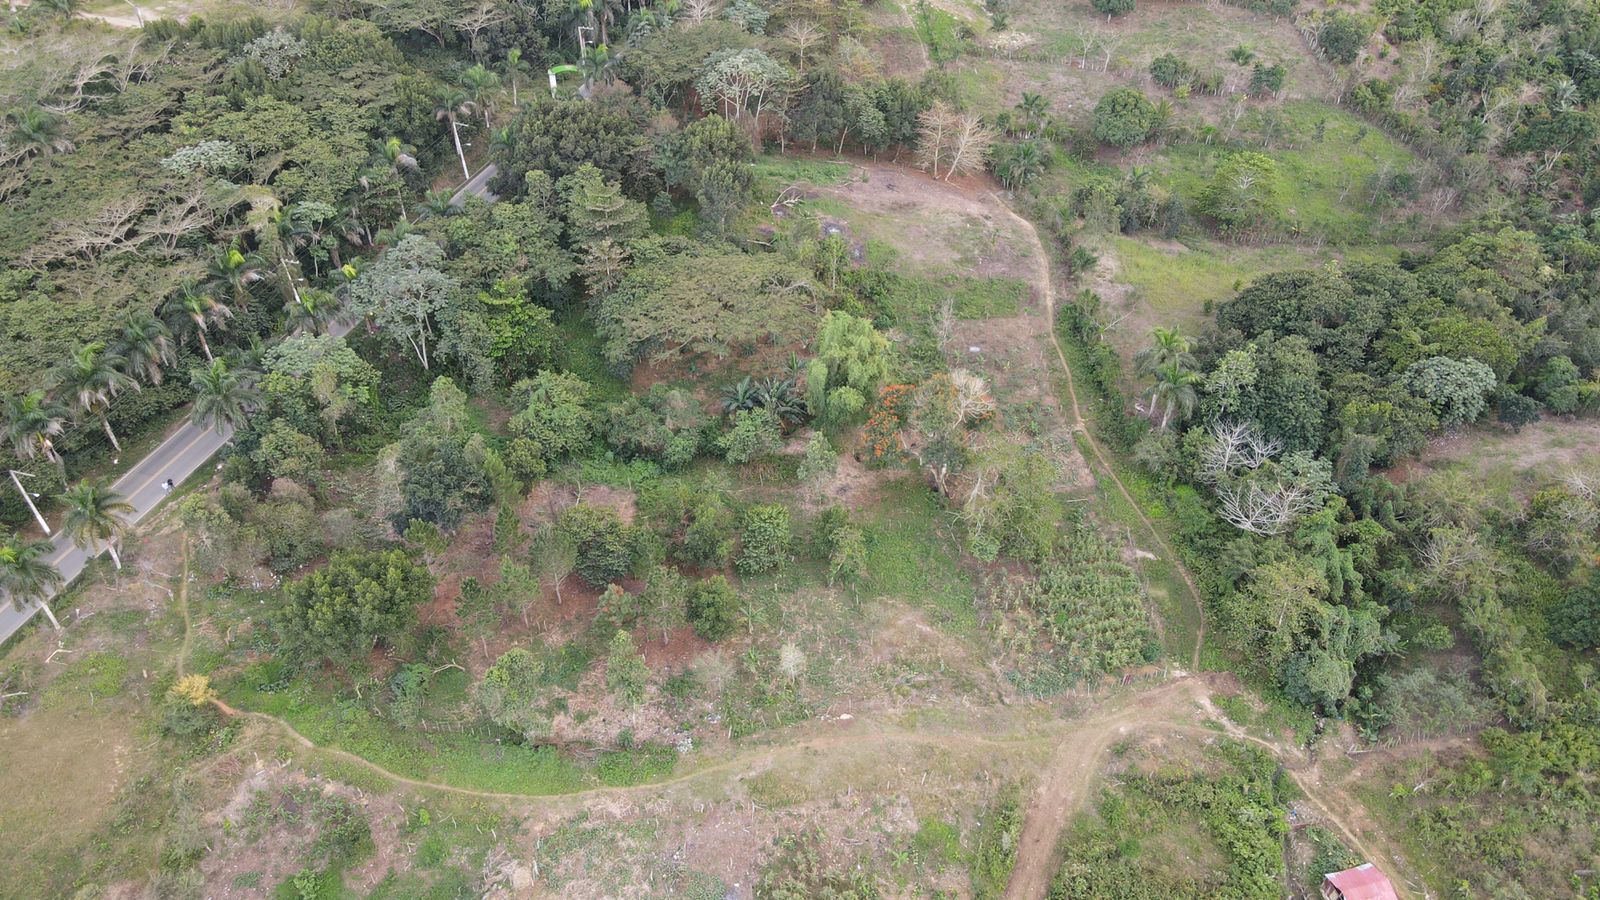 1641420612 770 Desaprensivos destruyen zona verde en Sabana Grande de Boya